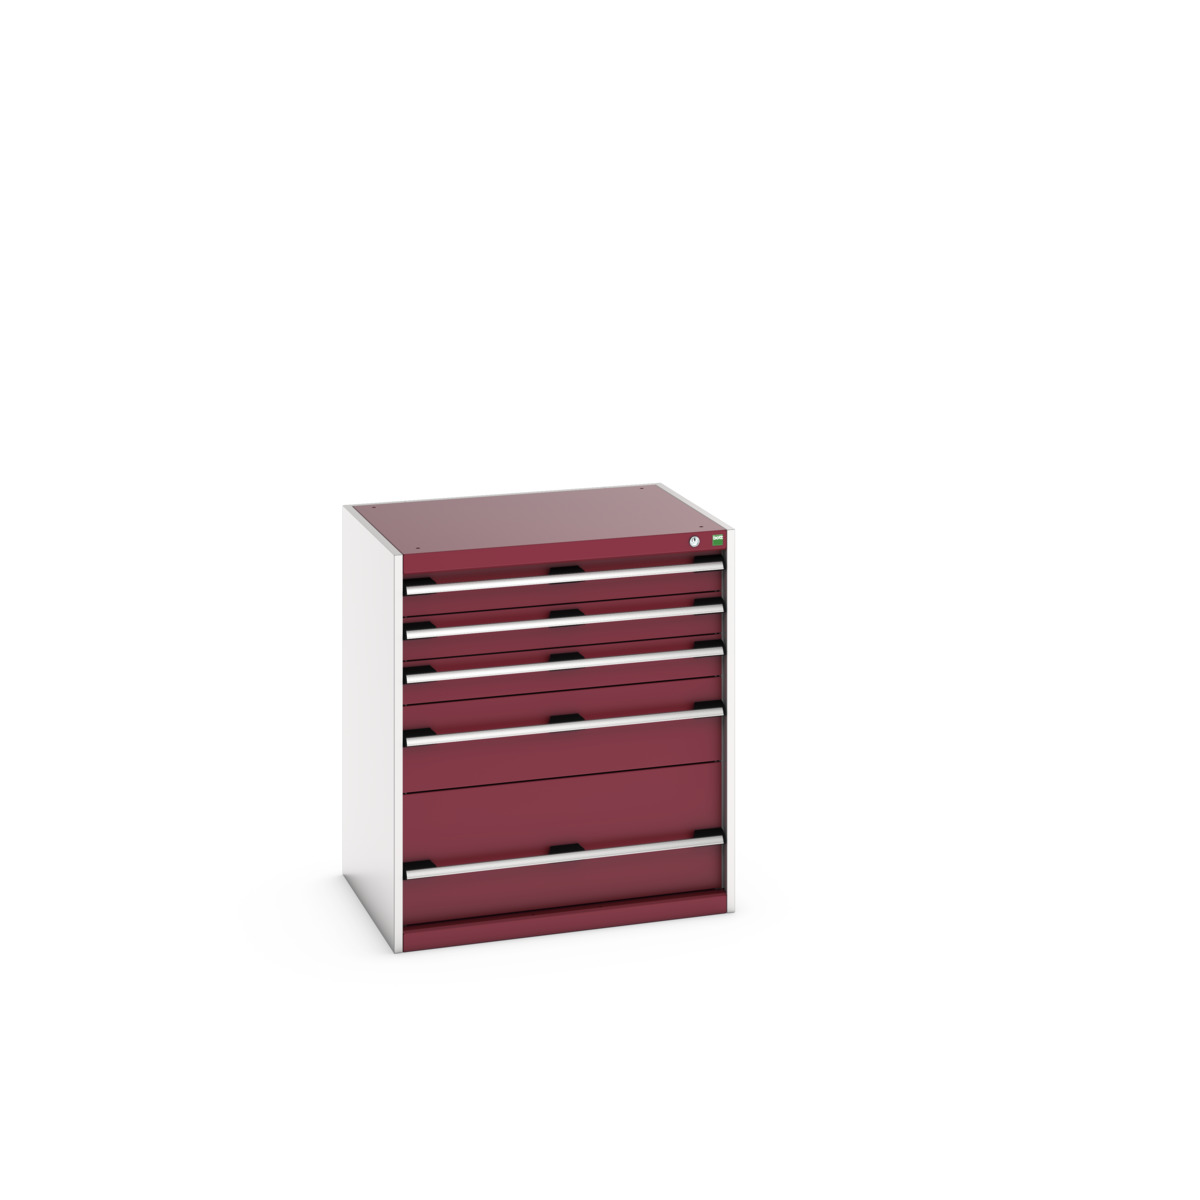 40020035.24V - cubio drawer cabinet